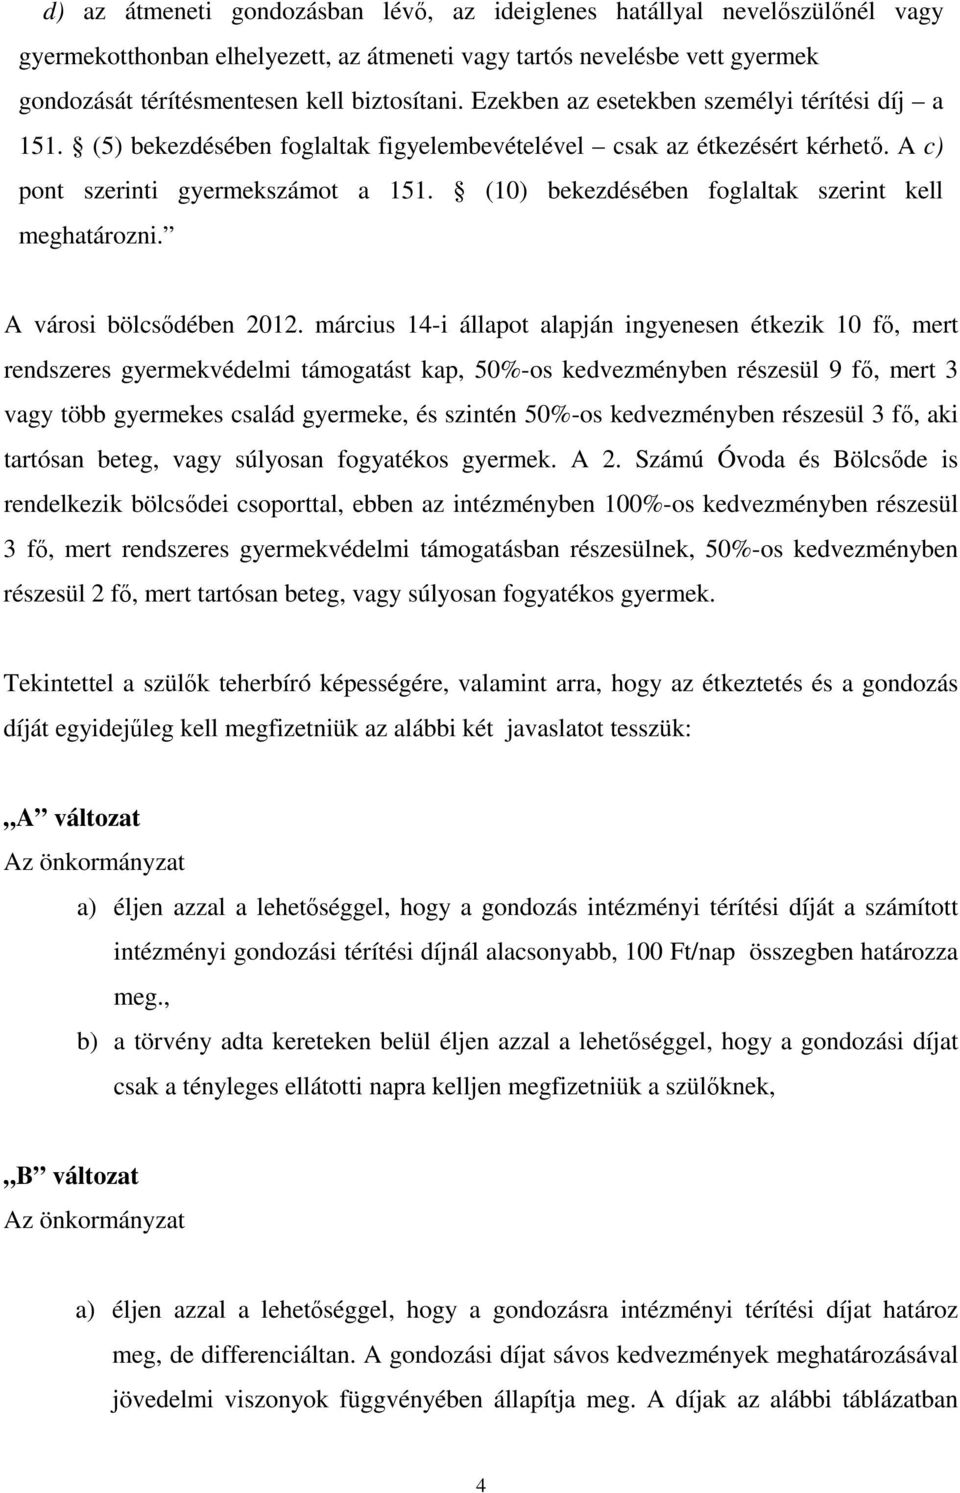 (10) bekezdésében foglaltak szerint kell meghatározni. A városi bölcsıdében 2012.